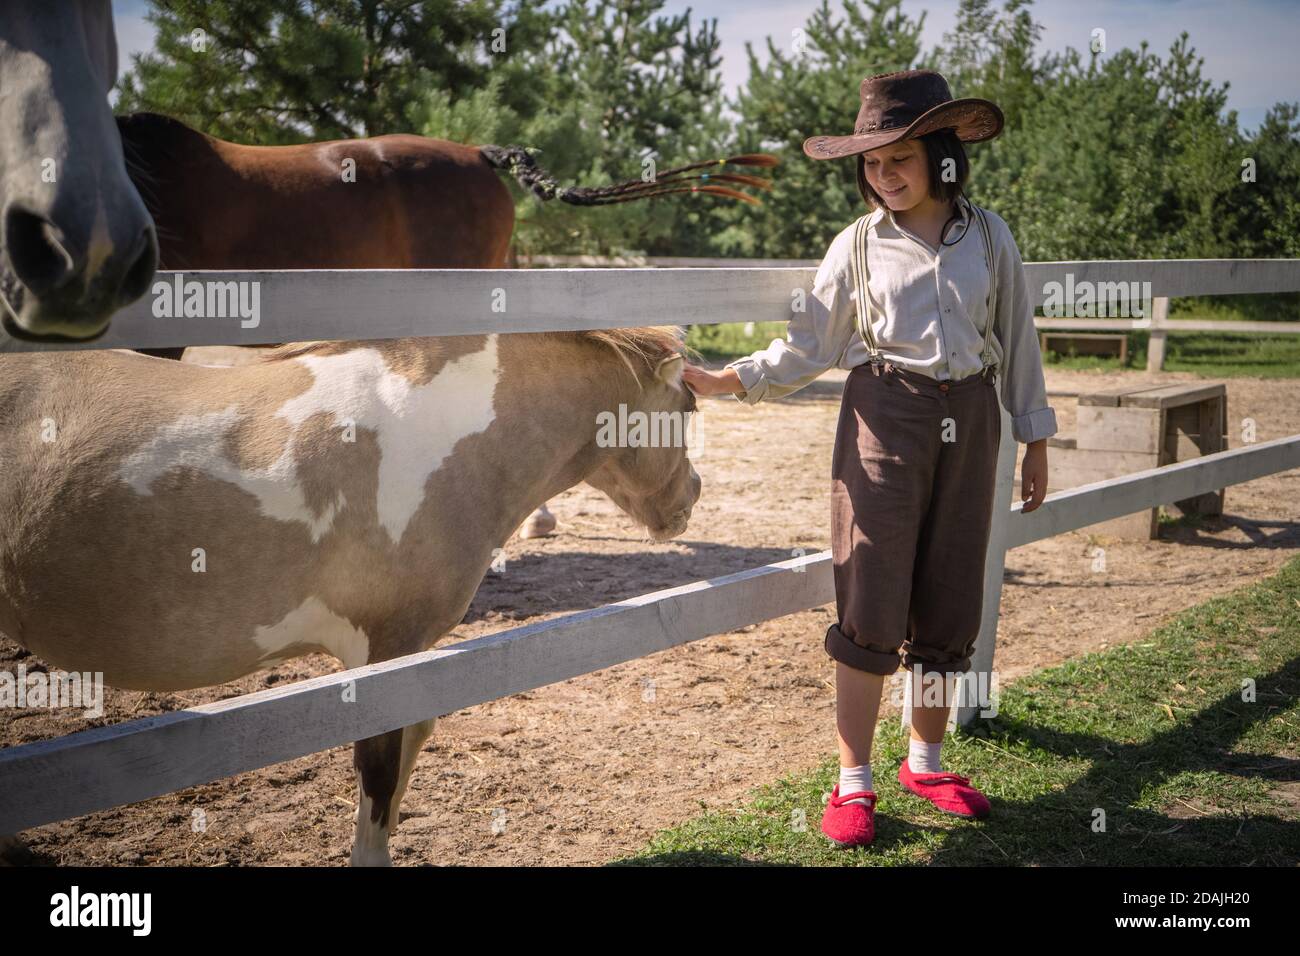 Une fille souriante en vêtements de cow-boy fait un petit poney dans un enclos le jour ensoleillé de l'été. Prendre soin des animaux concept Banque D'Images